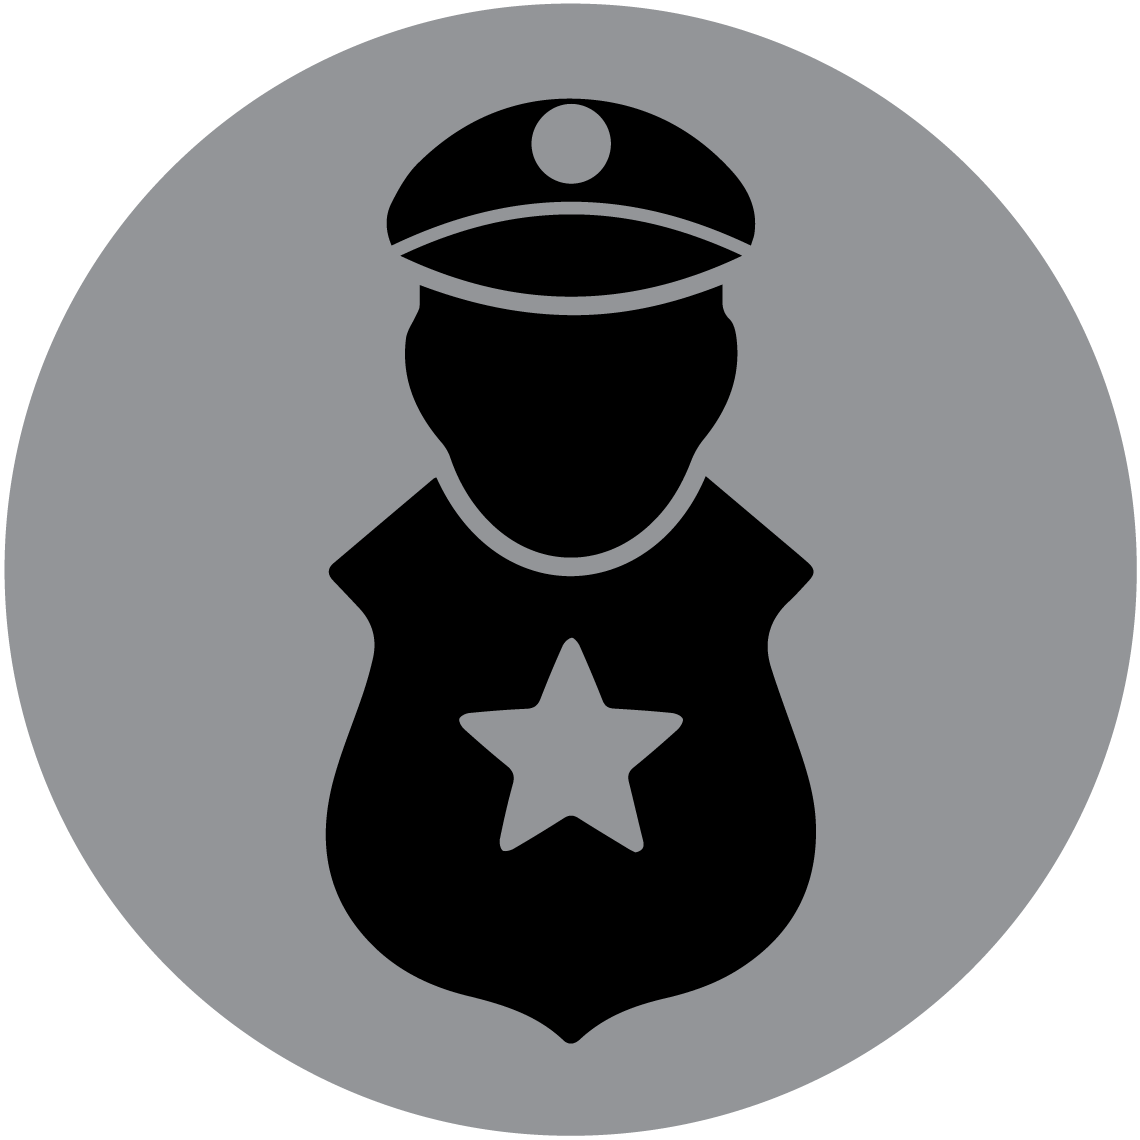 Guardsman (Barbados) Limited